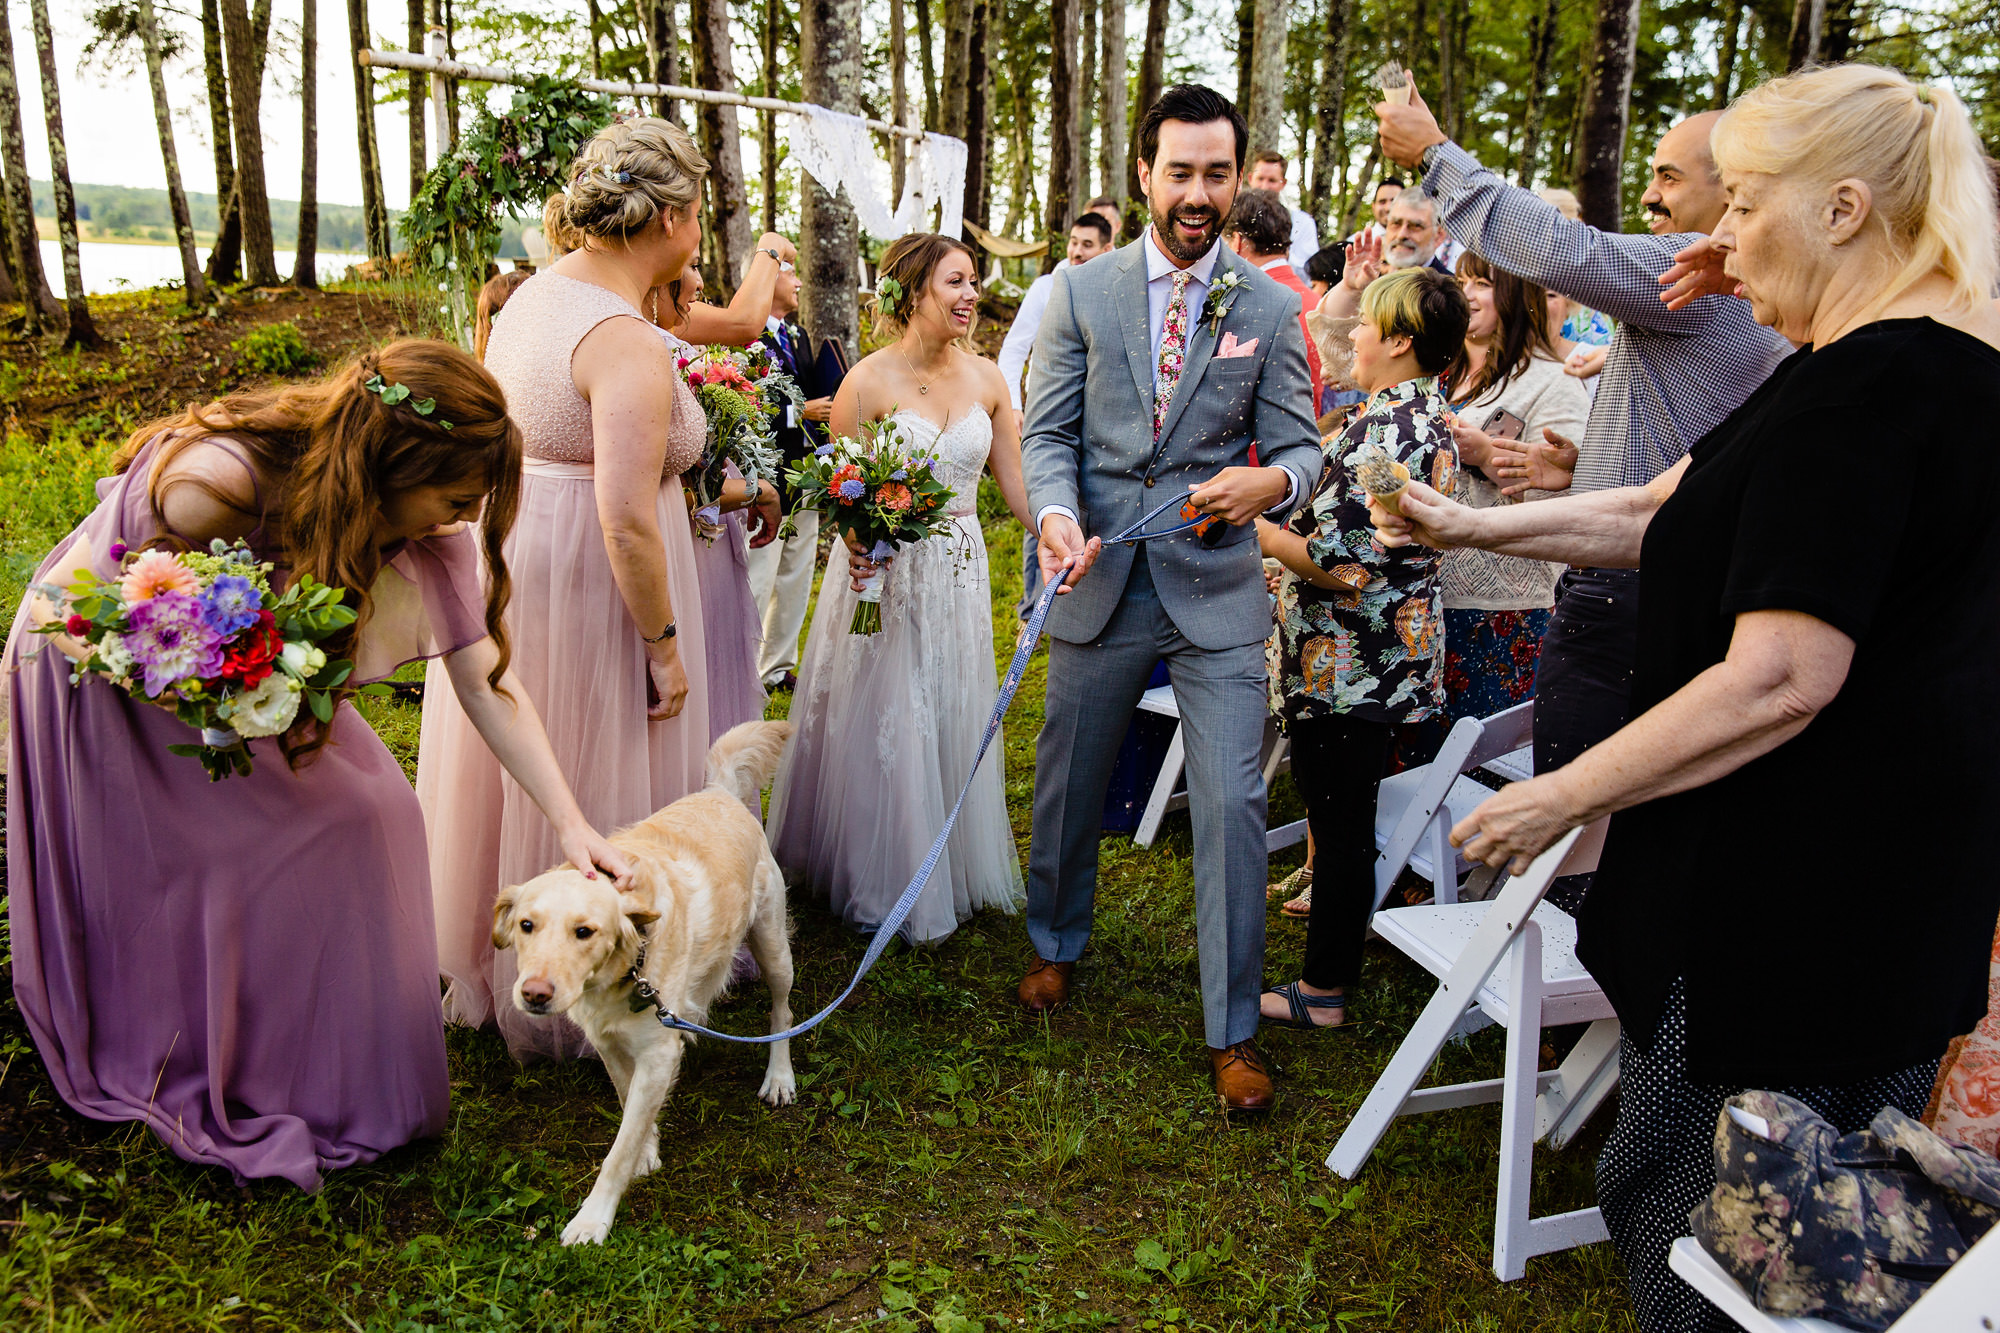 Lamoine Maine wedding photos